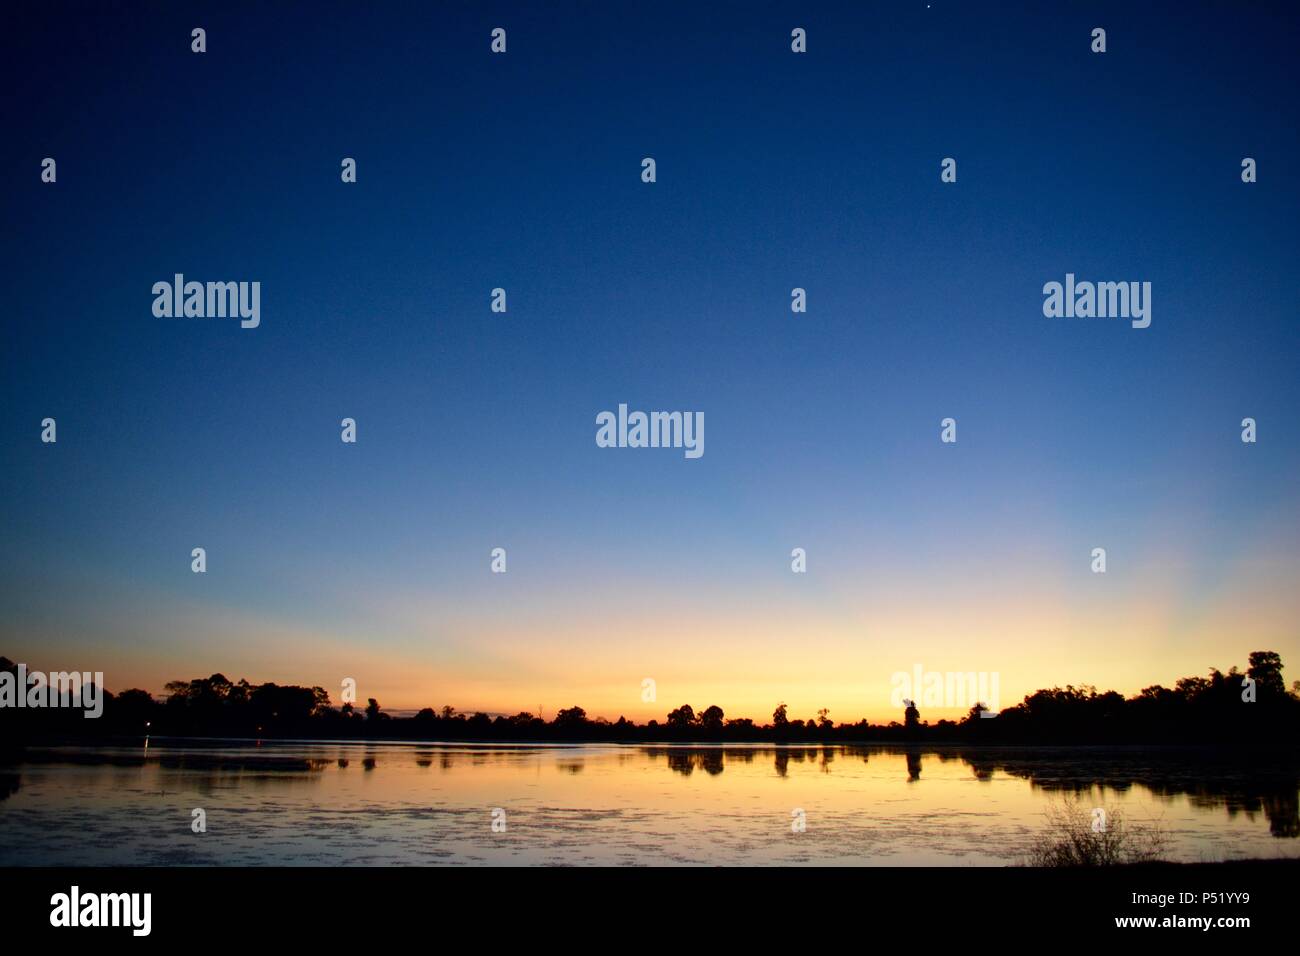 sunrise at Srah Srang lake in Cambodia Stock Photo